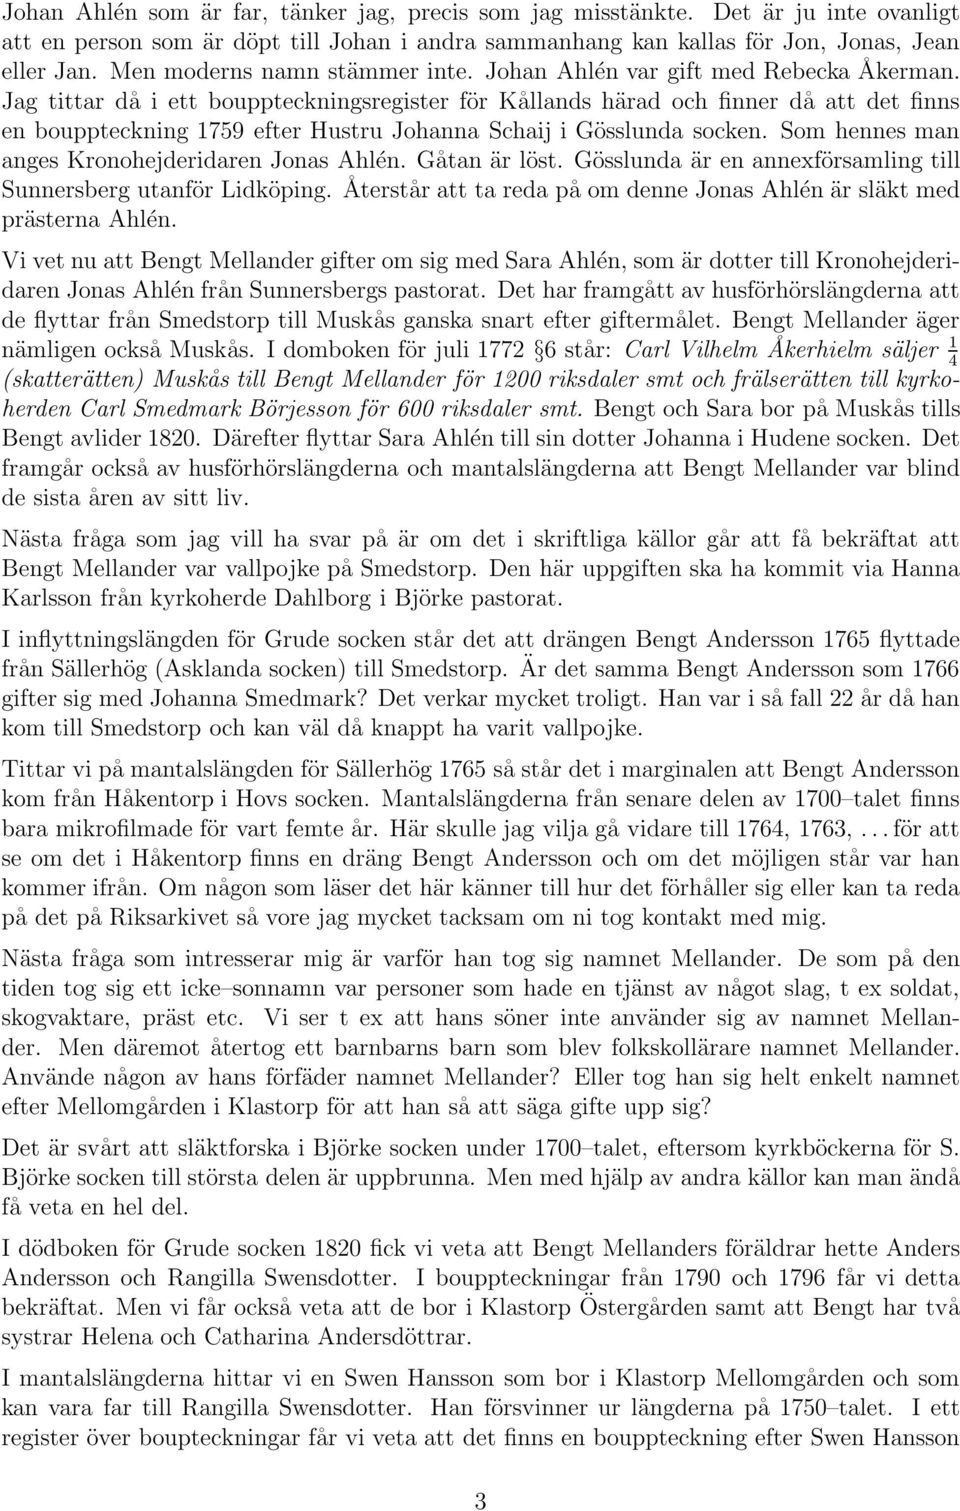 Jag tittar då i ett bouppteckningsregister för Kållands härad och finner då att det finns en bouppteckning 1759 efter Hustru Johanna Schaij i Gösslunda socken.